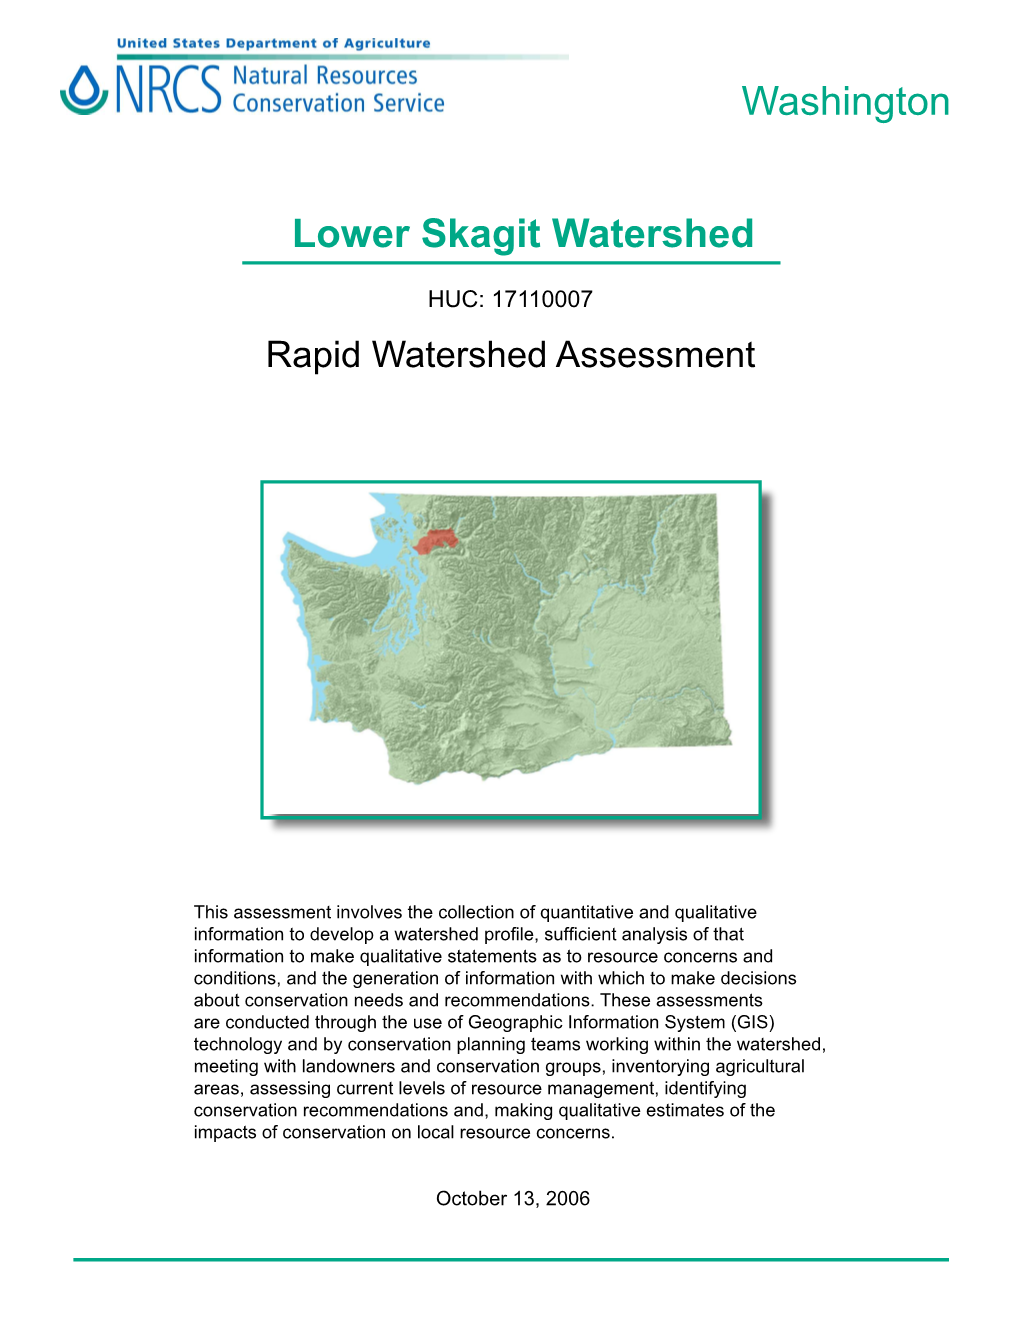 Lower Skagit Watershed Washington